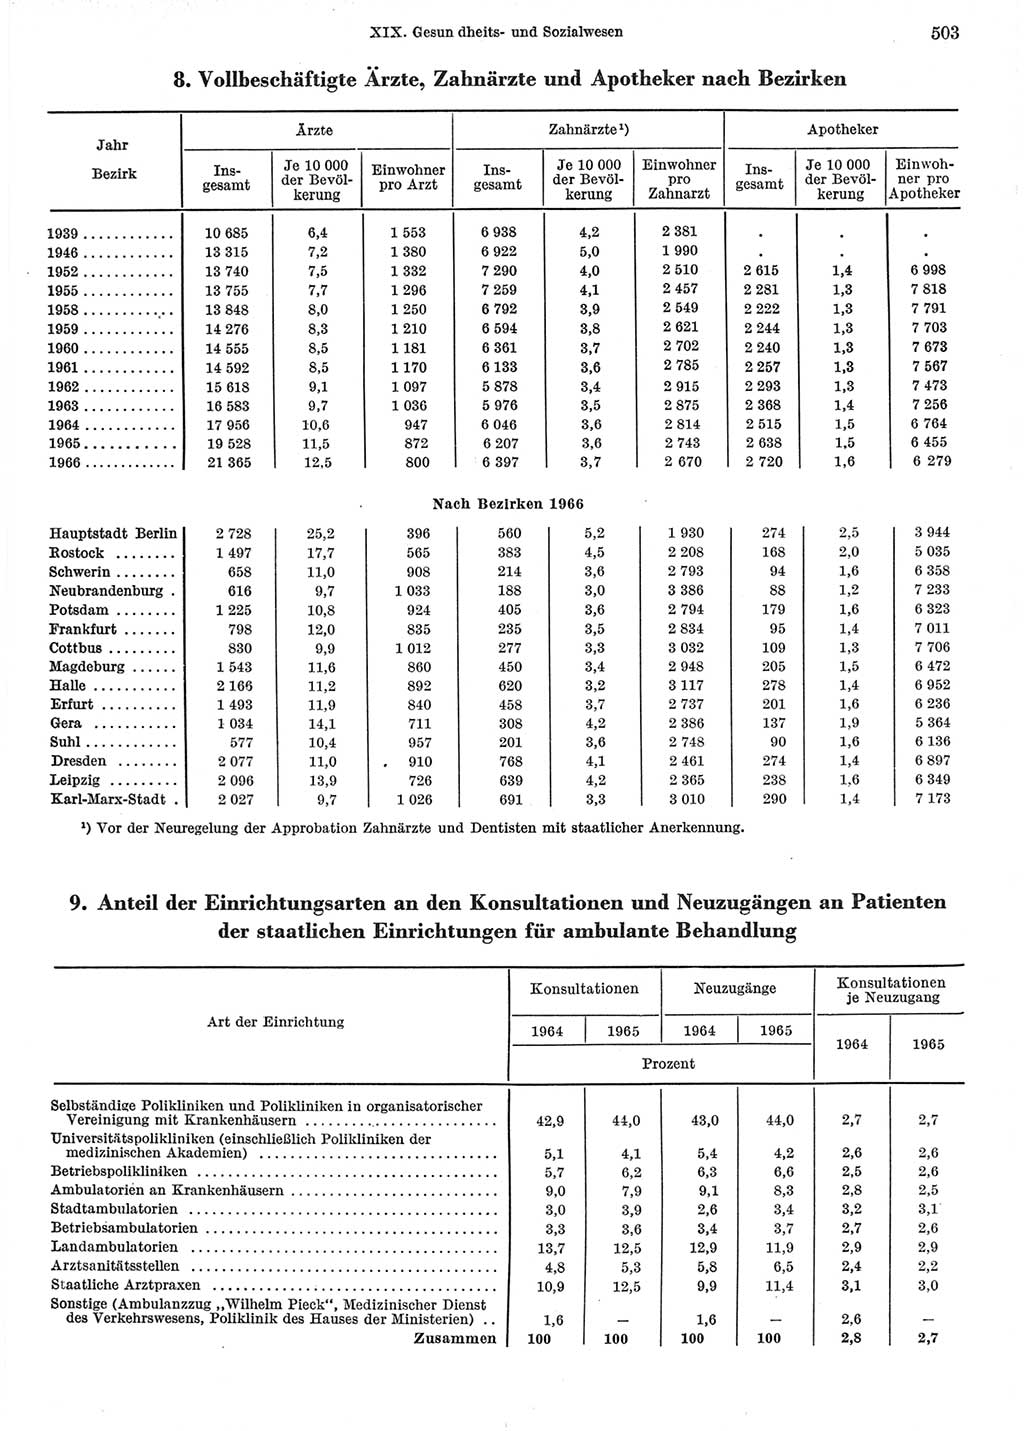 Statistisches Jahrbuch der Deutschen Demokratischen Republik (DDR) 1967, Seite 503 (Stat. Jb. DDR 1967, S. 503)